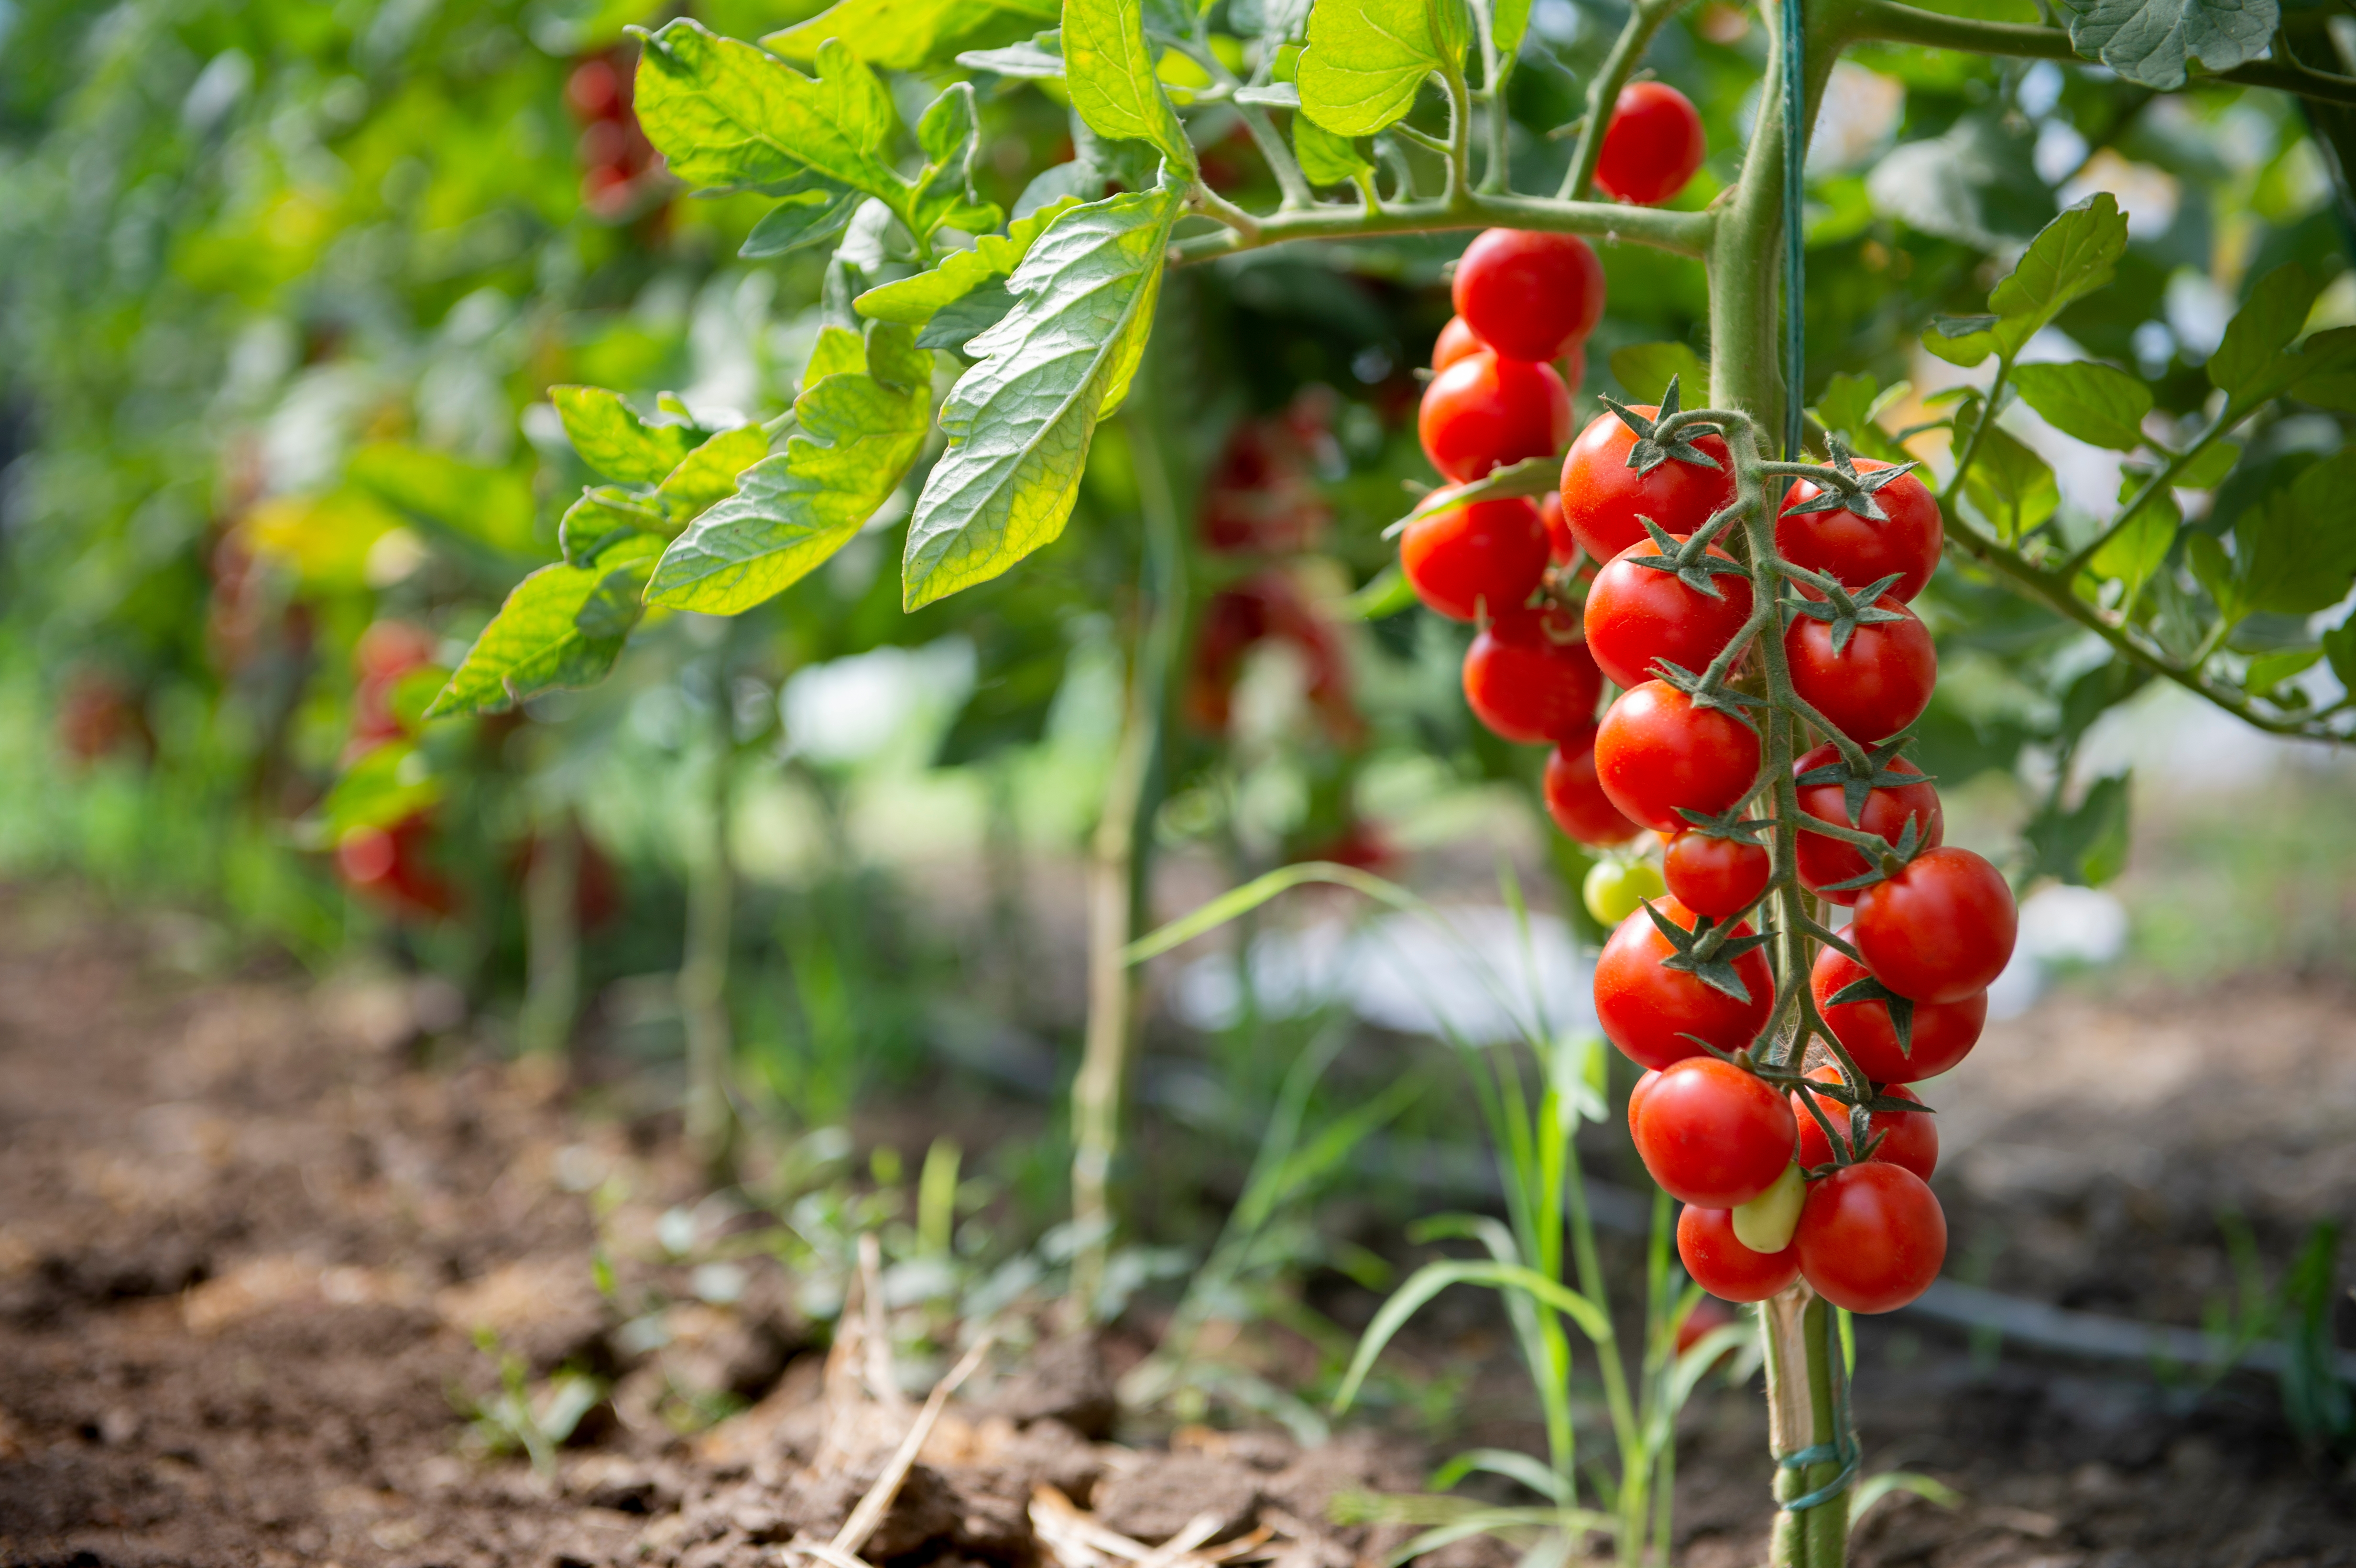 La tomate appelle l’été et ses salades ensoleillées. Mais à partir de quand semer et planter des tomates ? Copyright (c) 2021 vlalukinv/Shutterstock.